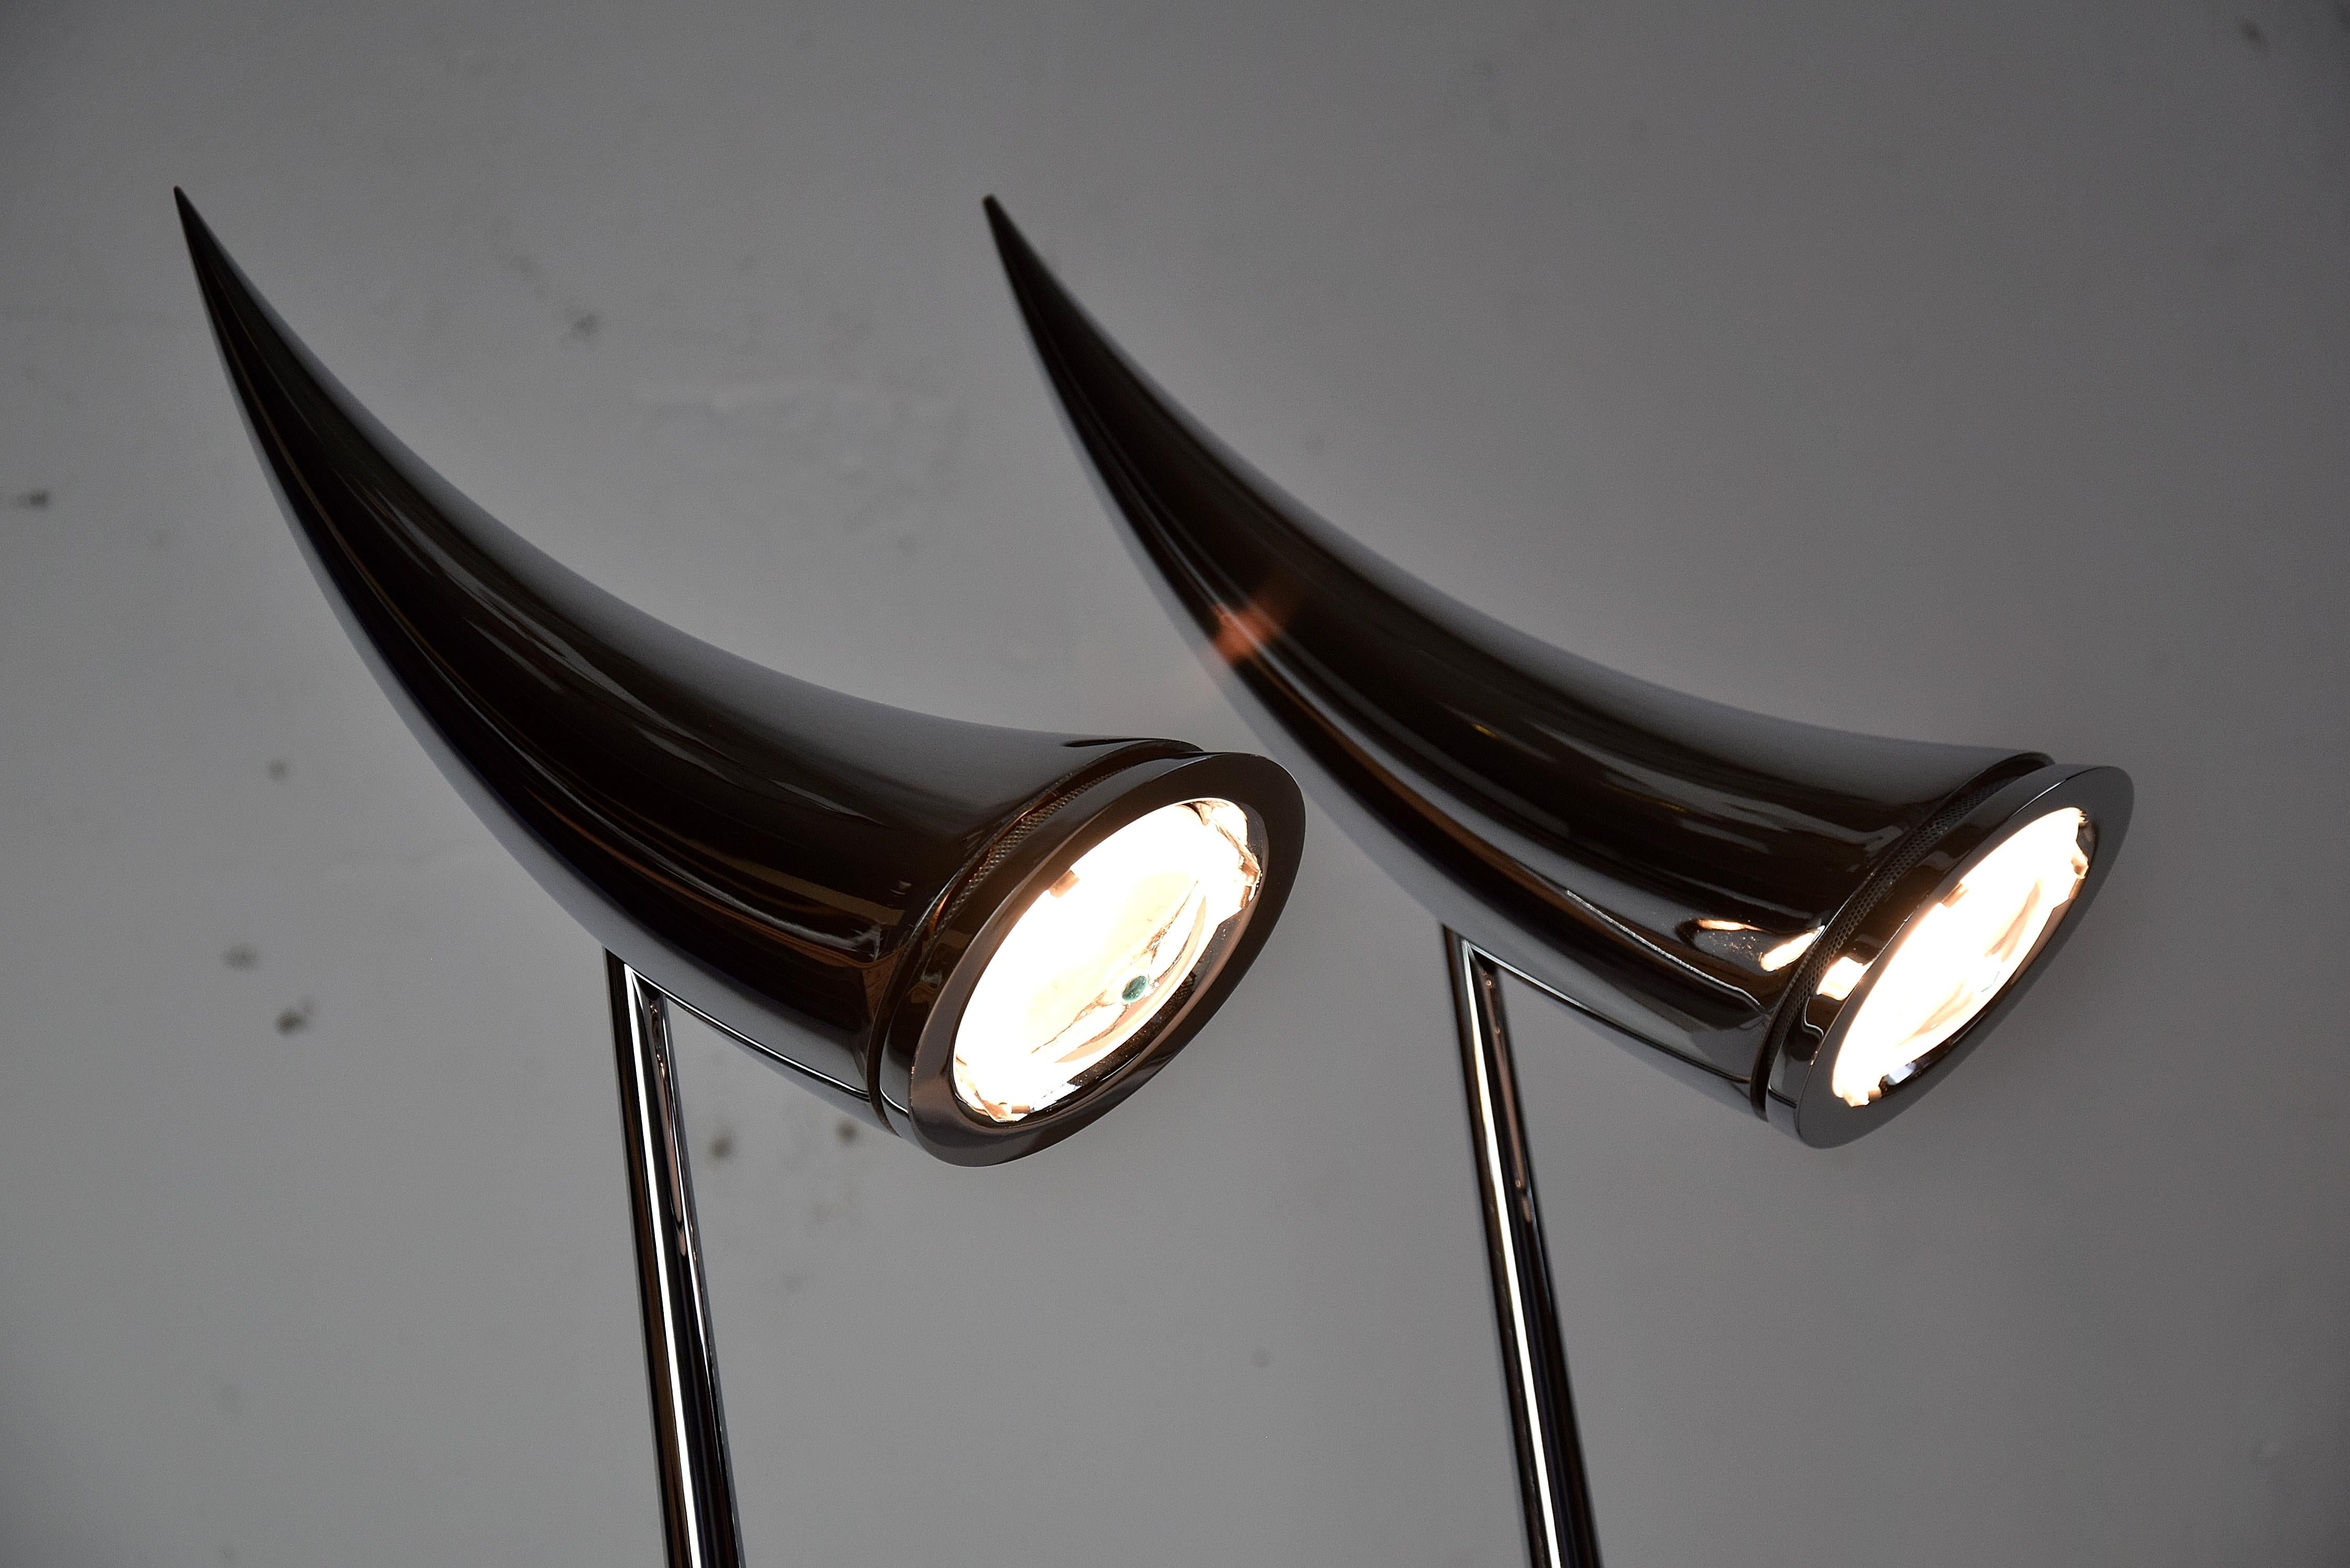 Paire élégante de lampes de table Ara conçues par Philippe Starck et produites par Flos, Italie, 1988. Les lampes sont en excellent état de fonctionnement. Si vous inclinez la partie supérieure de la lampe vers le haut, la lumière s'éteint. Si vous